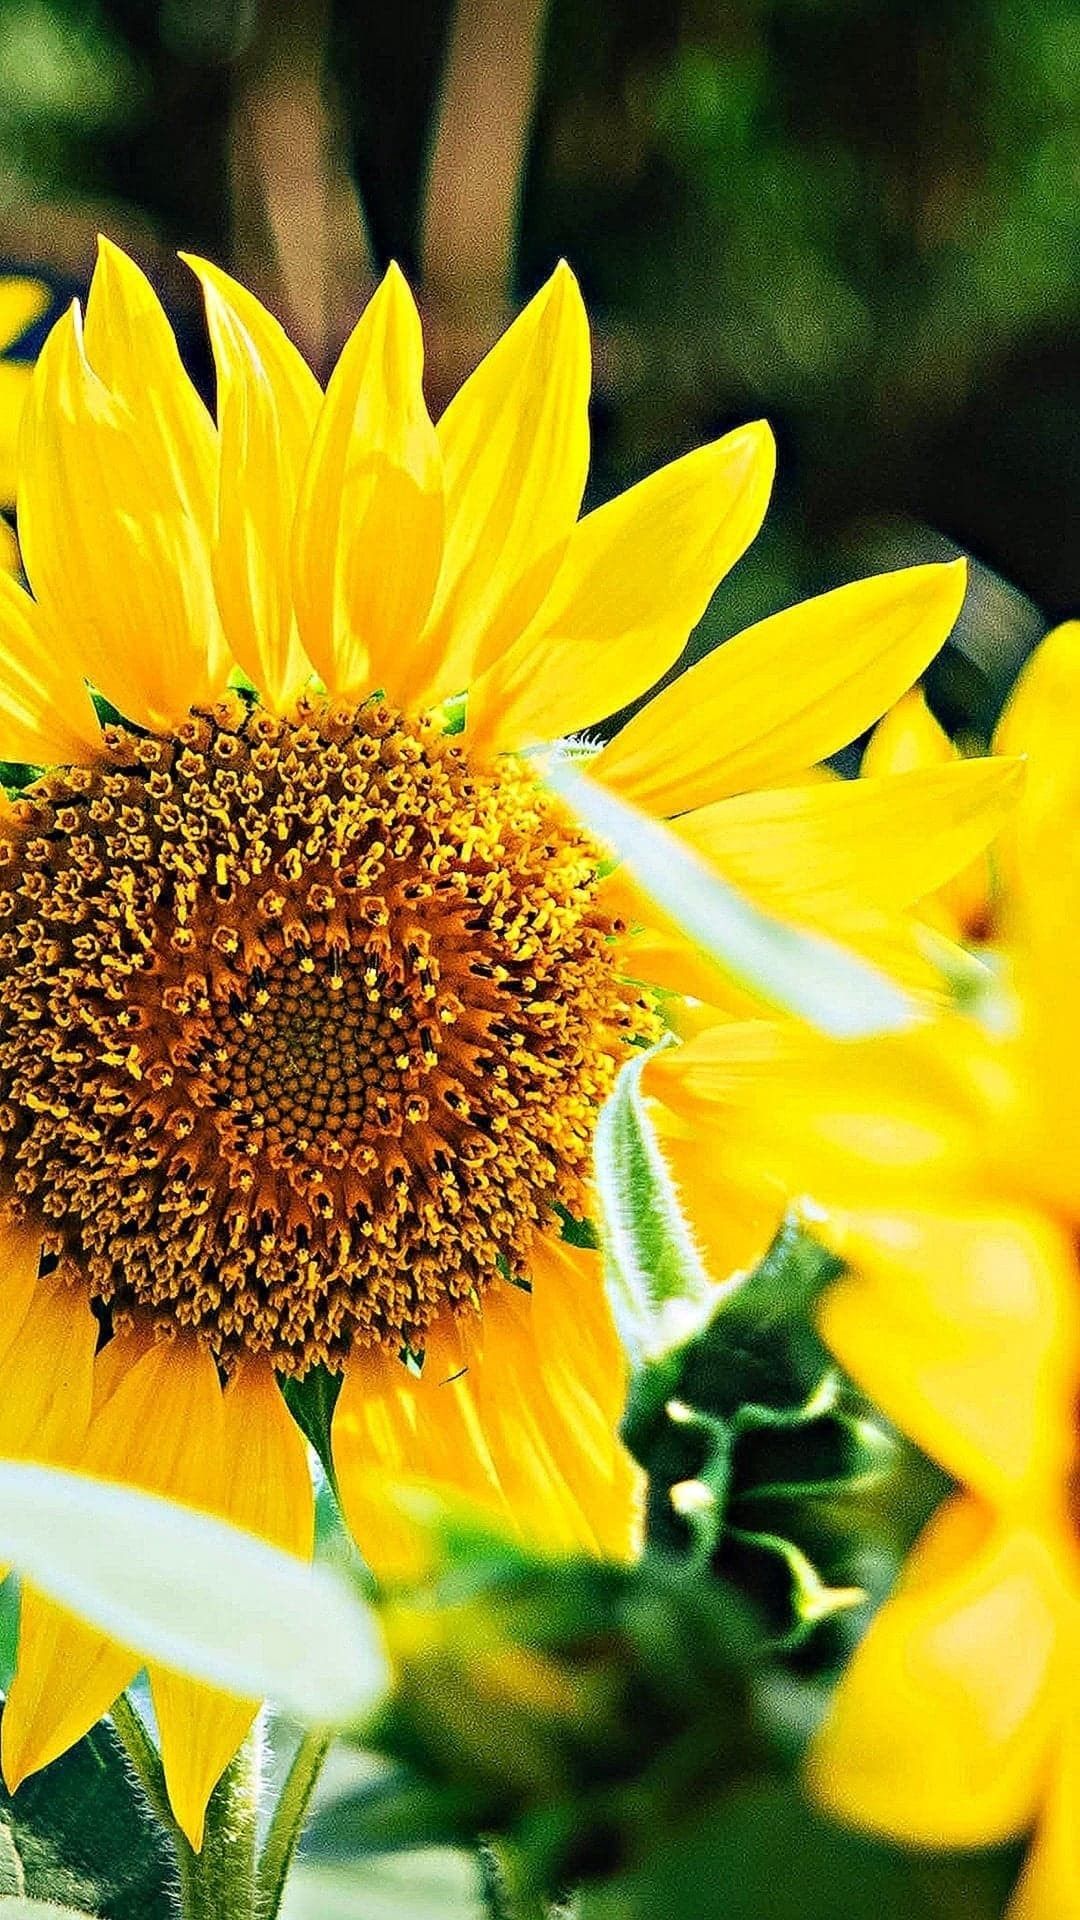 Sunflower HD Wallpaper For Mobile